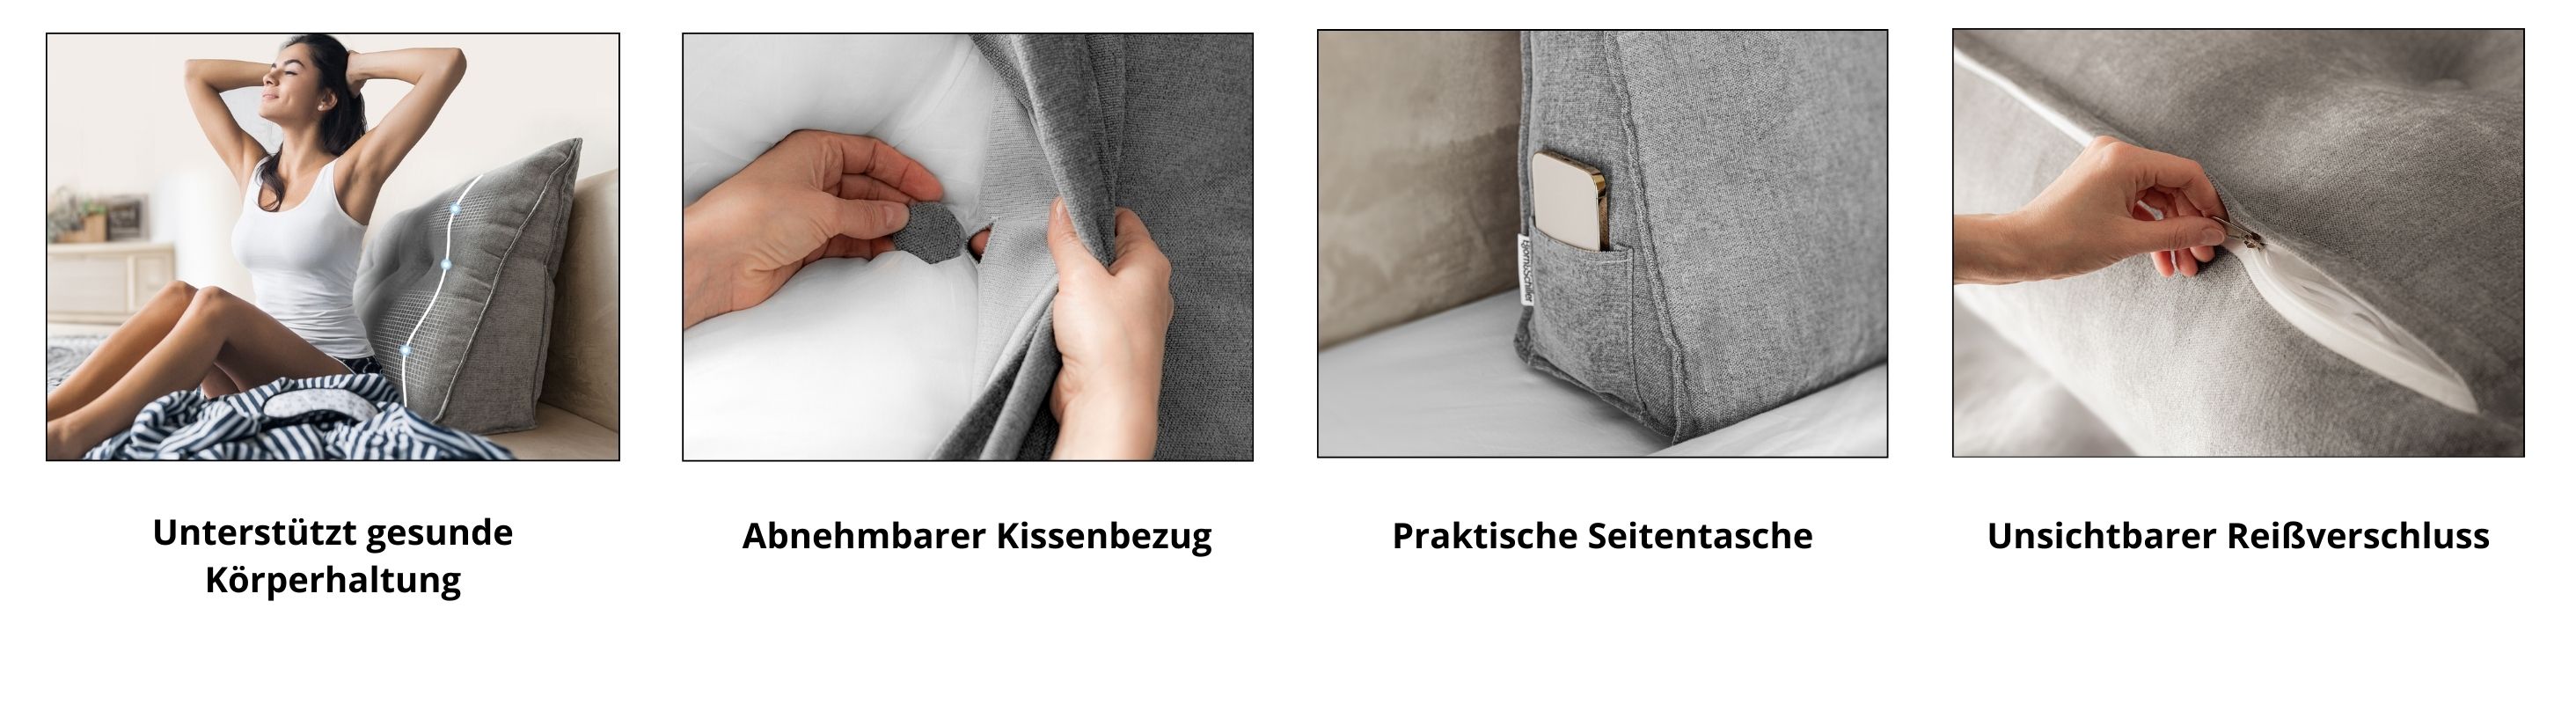 Björn&Schiller Rückenkissen grau, in 3 Größen - Lesekissen für Bett und Sofa, Keilkissen, Rückenpolster für die Wand, Sitzkissen, Wandkissen, groß mit waschbarem Bezug - Ideal zum Anlehnen im Bett-2